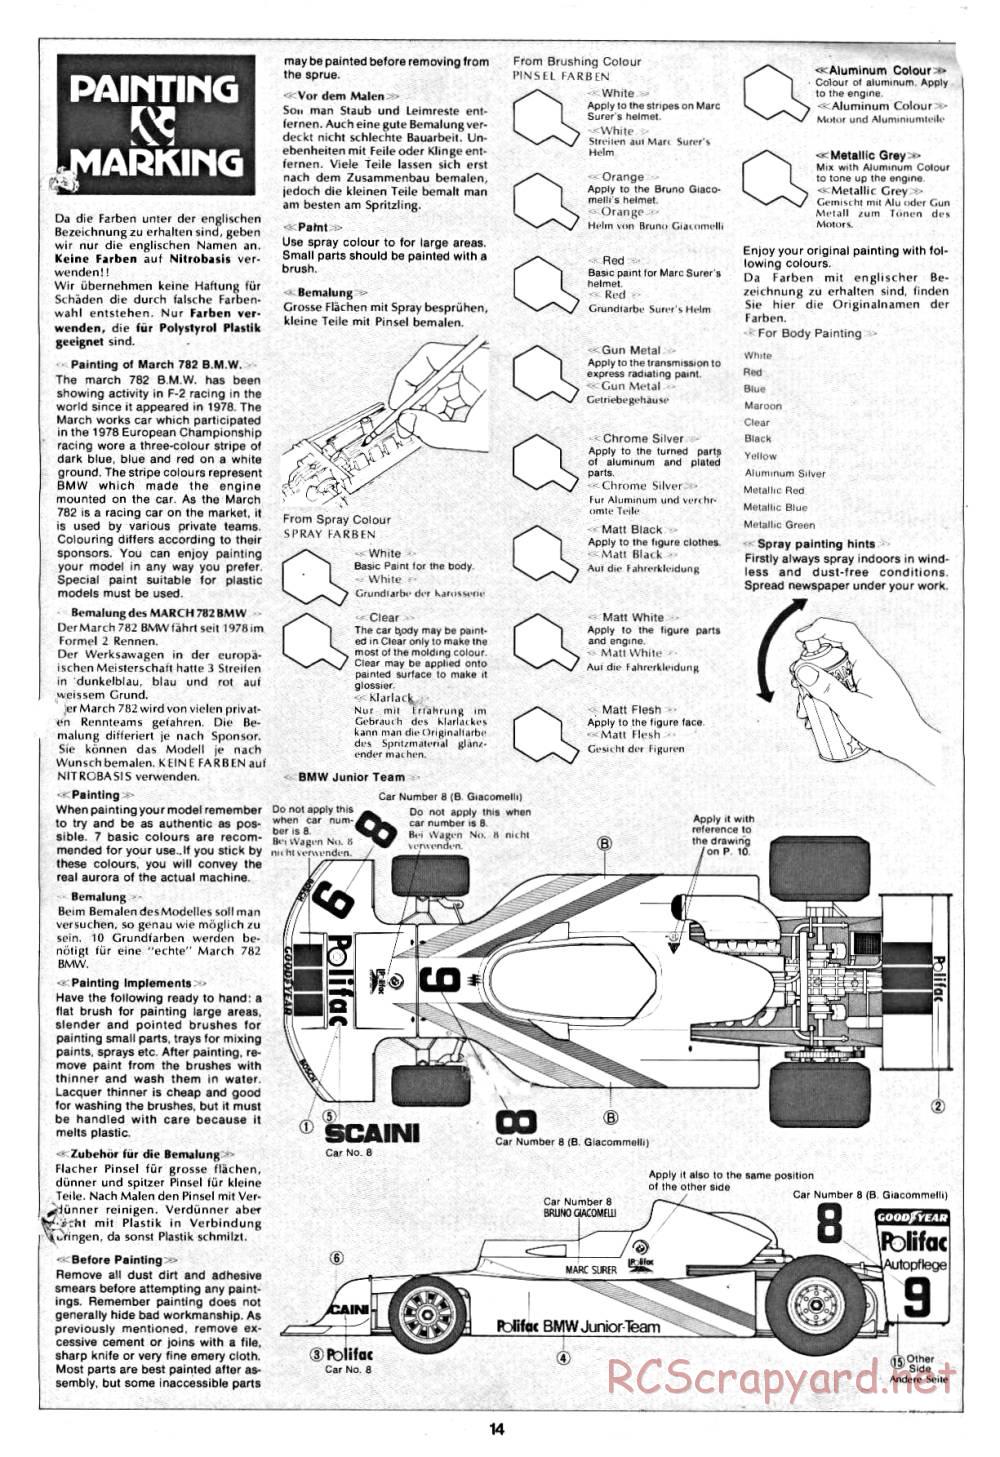 Tamiya - March 782 BMW (F2) - 58013 - Manual - Page 14